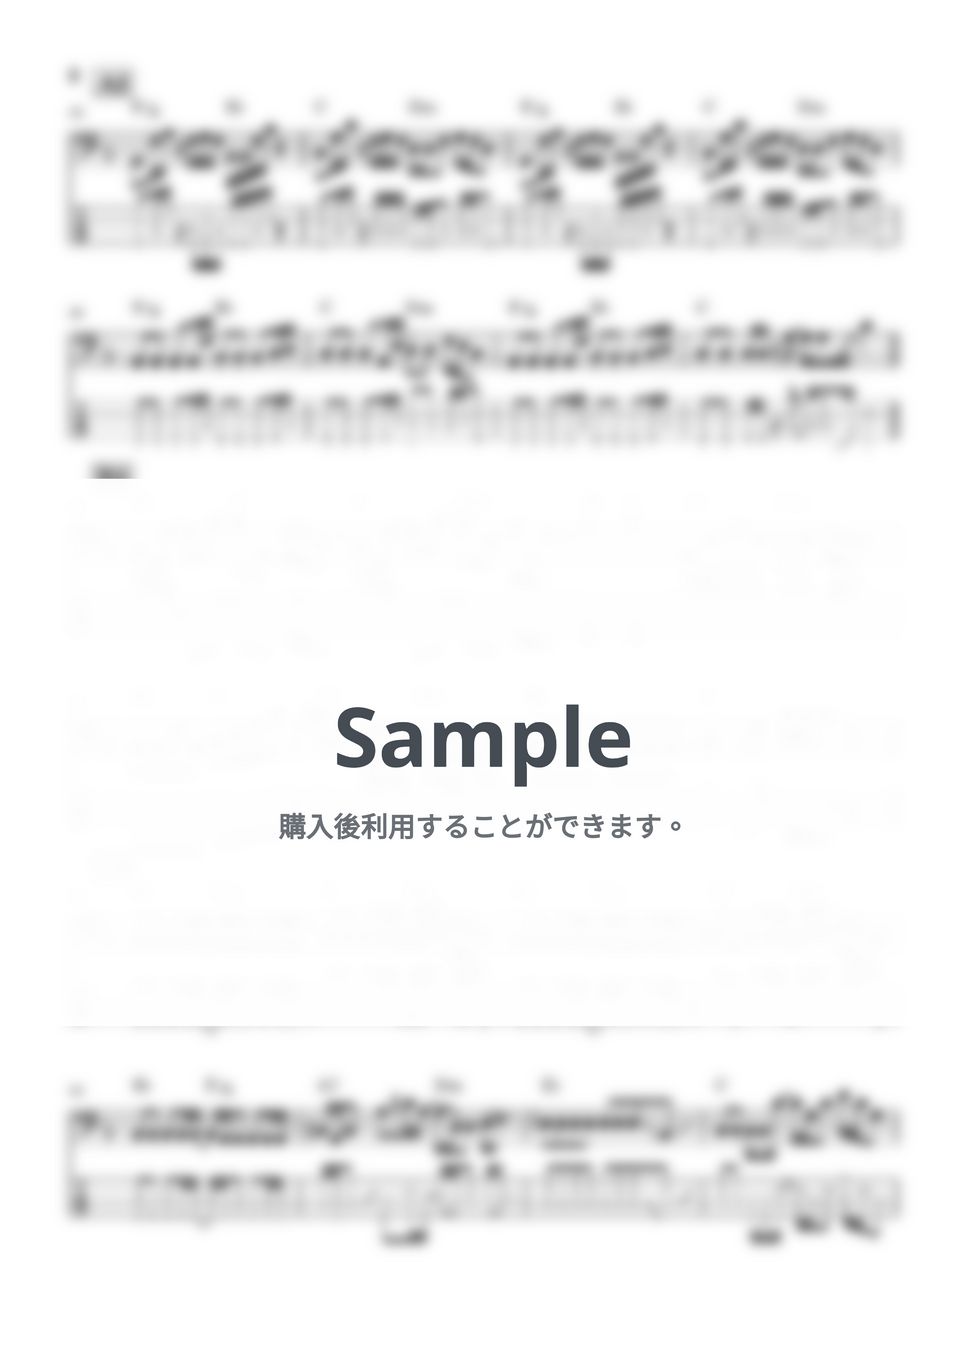 優里 - ベテルギウス (ドラマ『SUPER RICH』主題歌、ベース譜) by Kodai Hojo